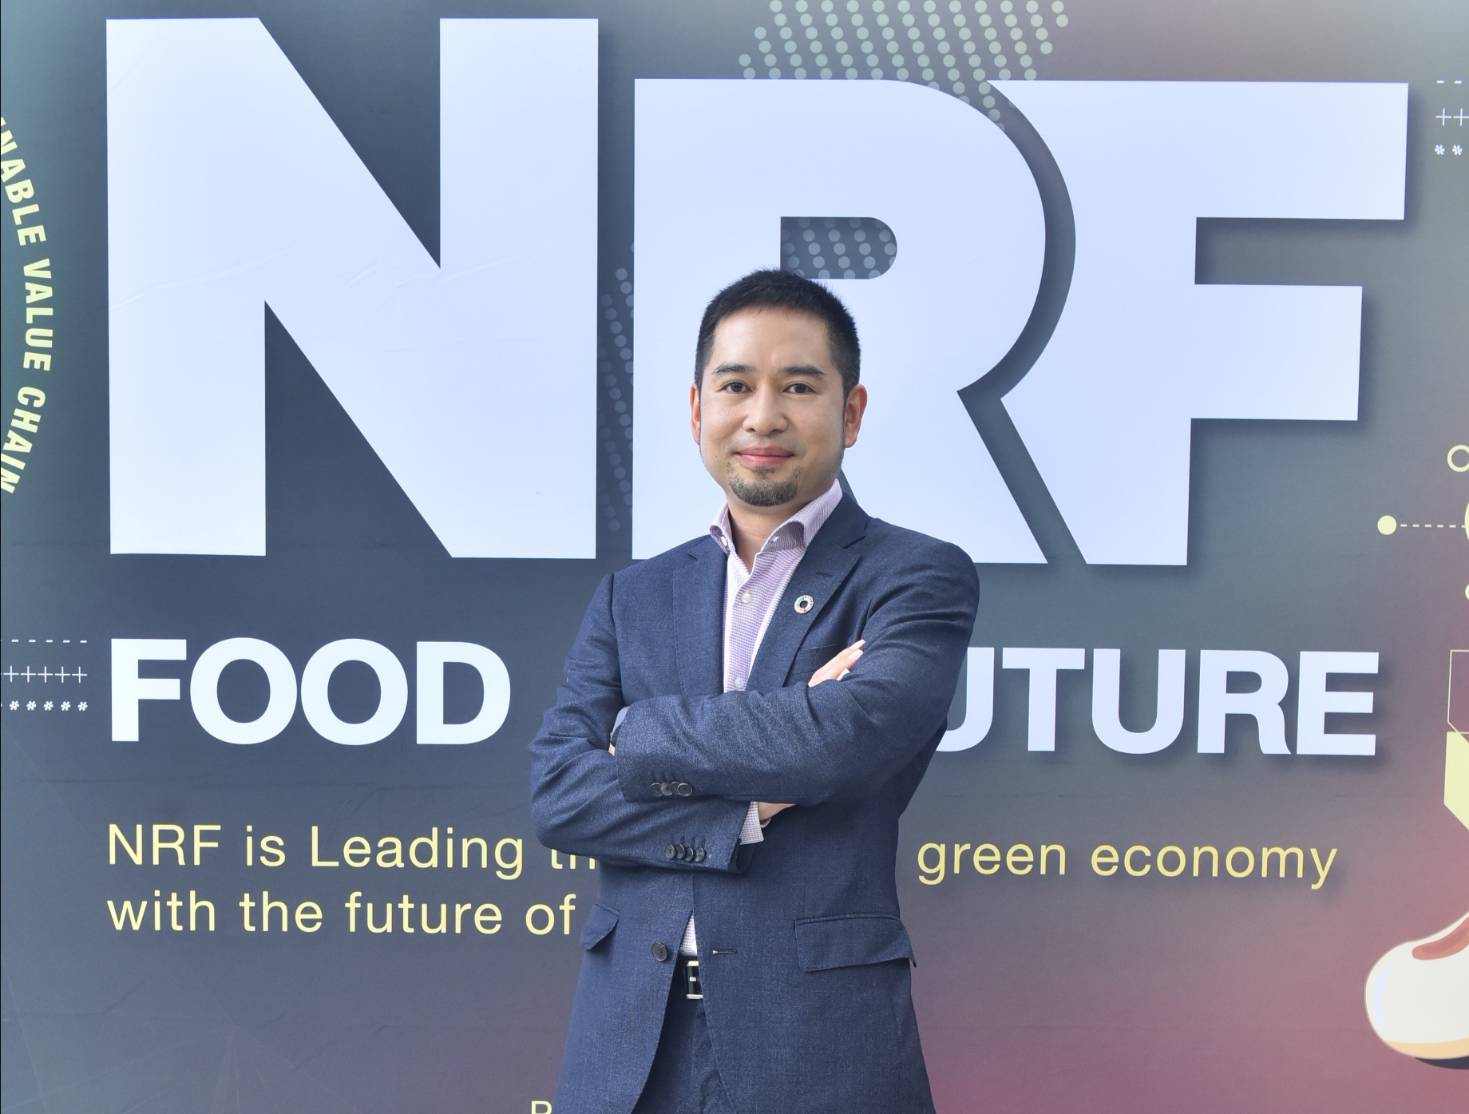 NRF เตรียมพร้อมเข้าเทรดวันแรกในตลาดหลักทรัพย์ฯ 9 ต.ค.นี้ โชว์ศักยภาพมุ่งสู่ผู้นำ Plant Based Food พร้อมชูแผนลงทุนผลักดันการเติบโตในอนาคต